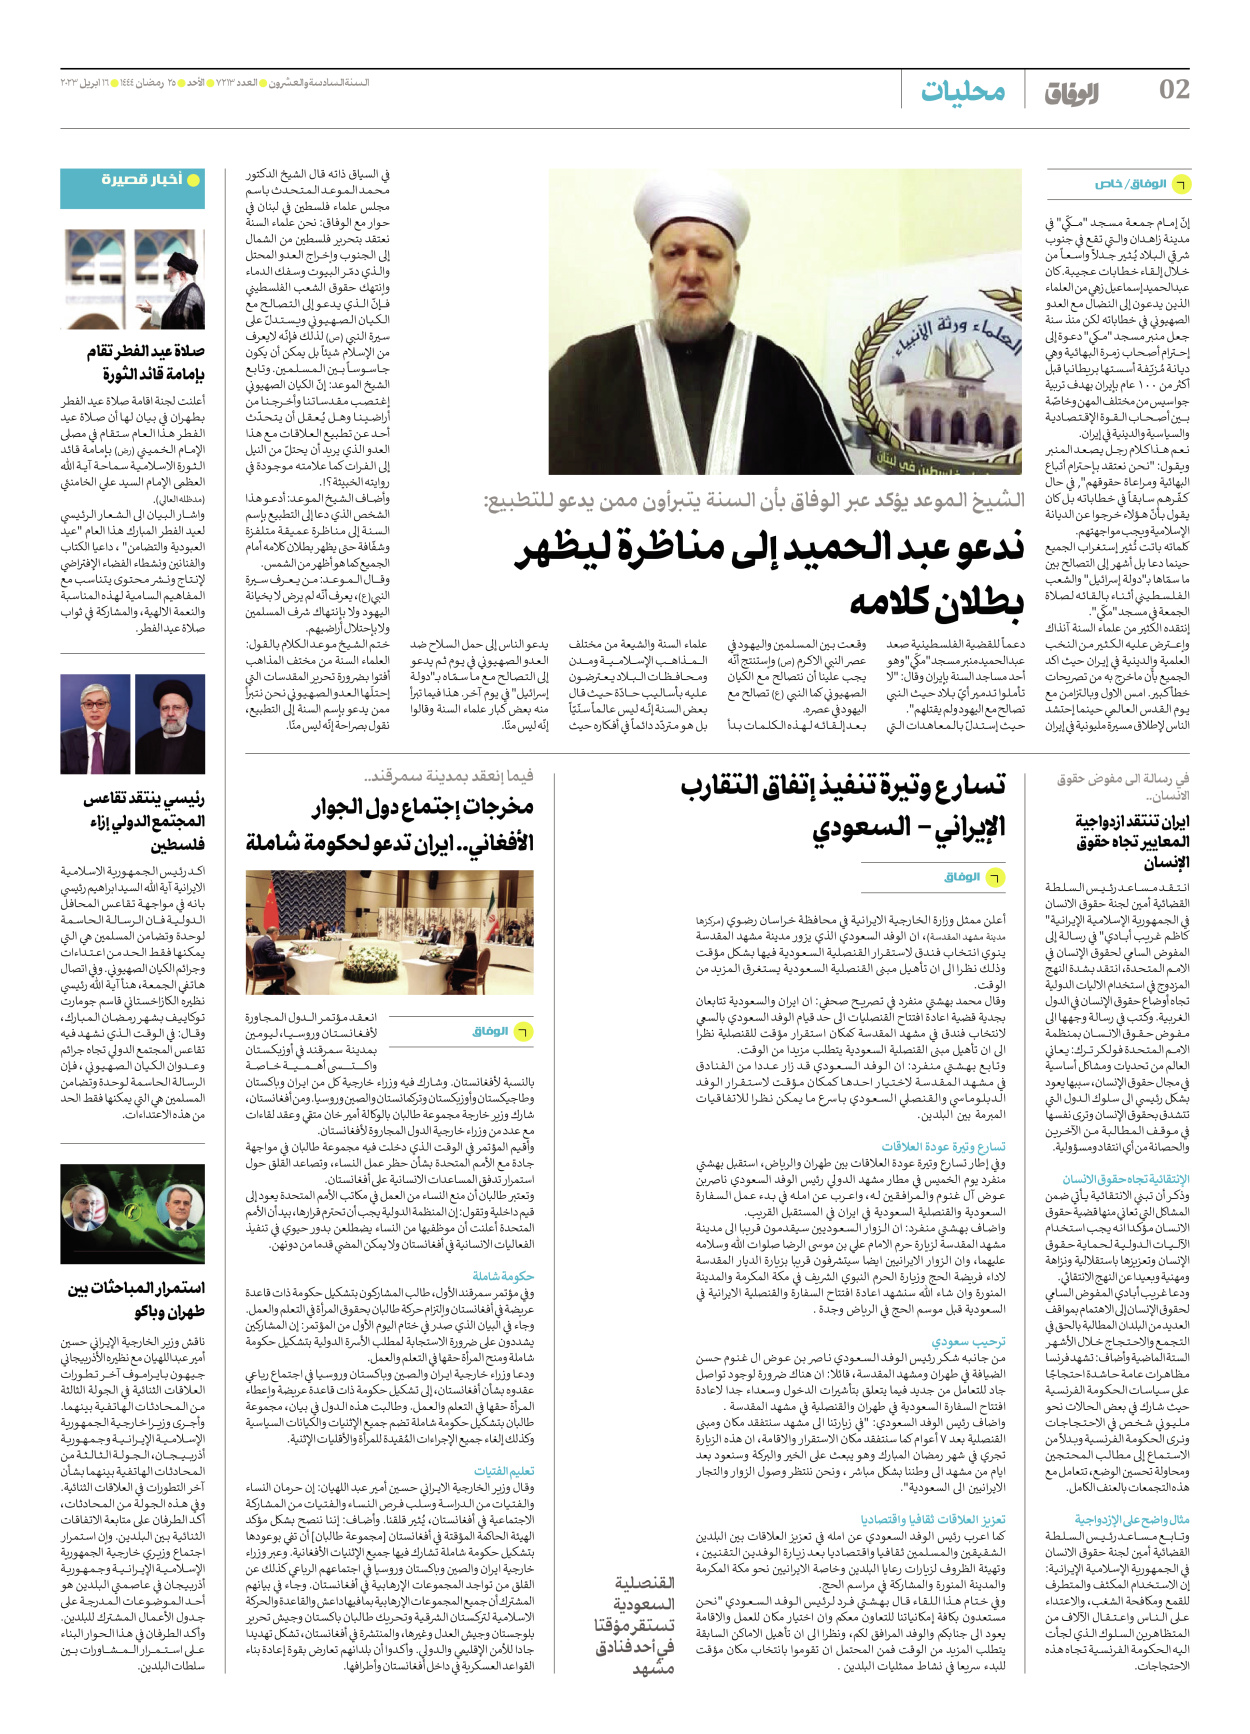 صحیفة ایران الدولیة الوفاق - العدد سبعة آلاف ومائتان وثلاثة عشر - ١٦ أبريل ٢٠٢٣ - الصفحة ۲